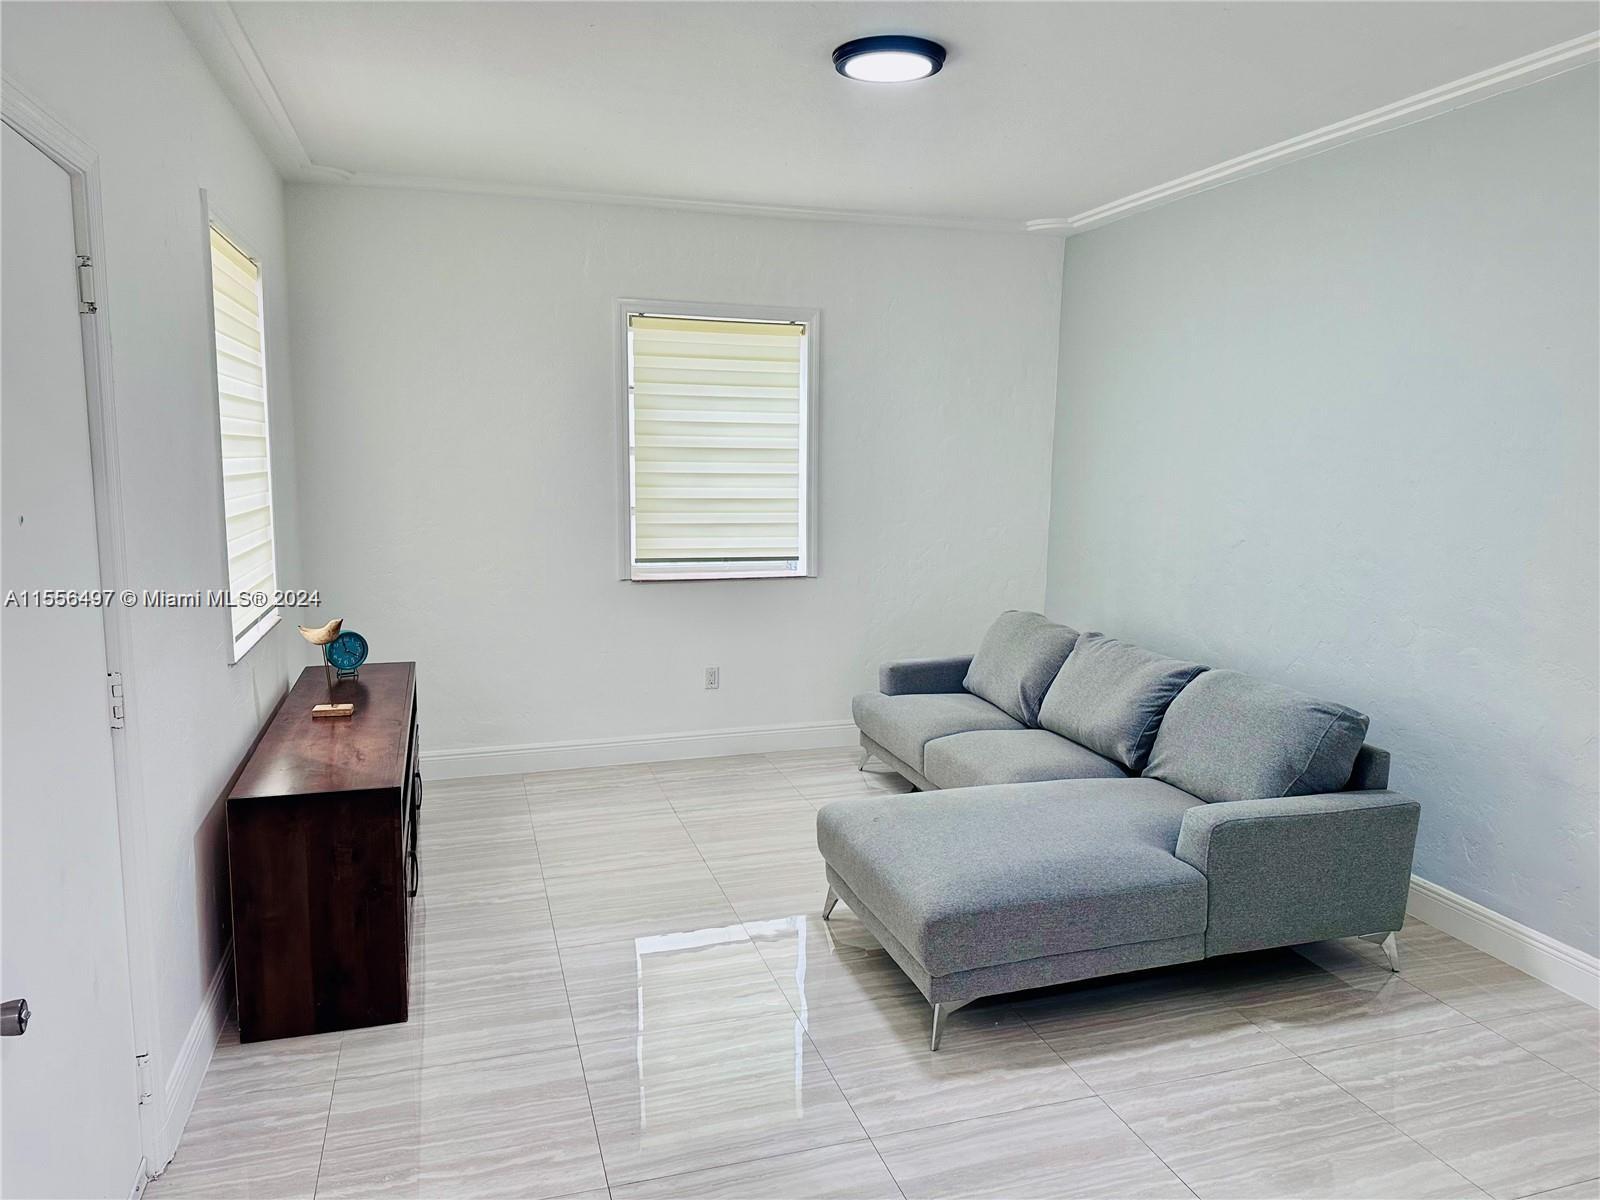 Rental Property at 928 Euclid Ave 5, Miami Beach, Miami-Dade County, Florida - Bedrooms: 2 
Bathrooms: 2  - $3,100 MO.